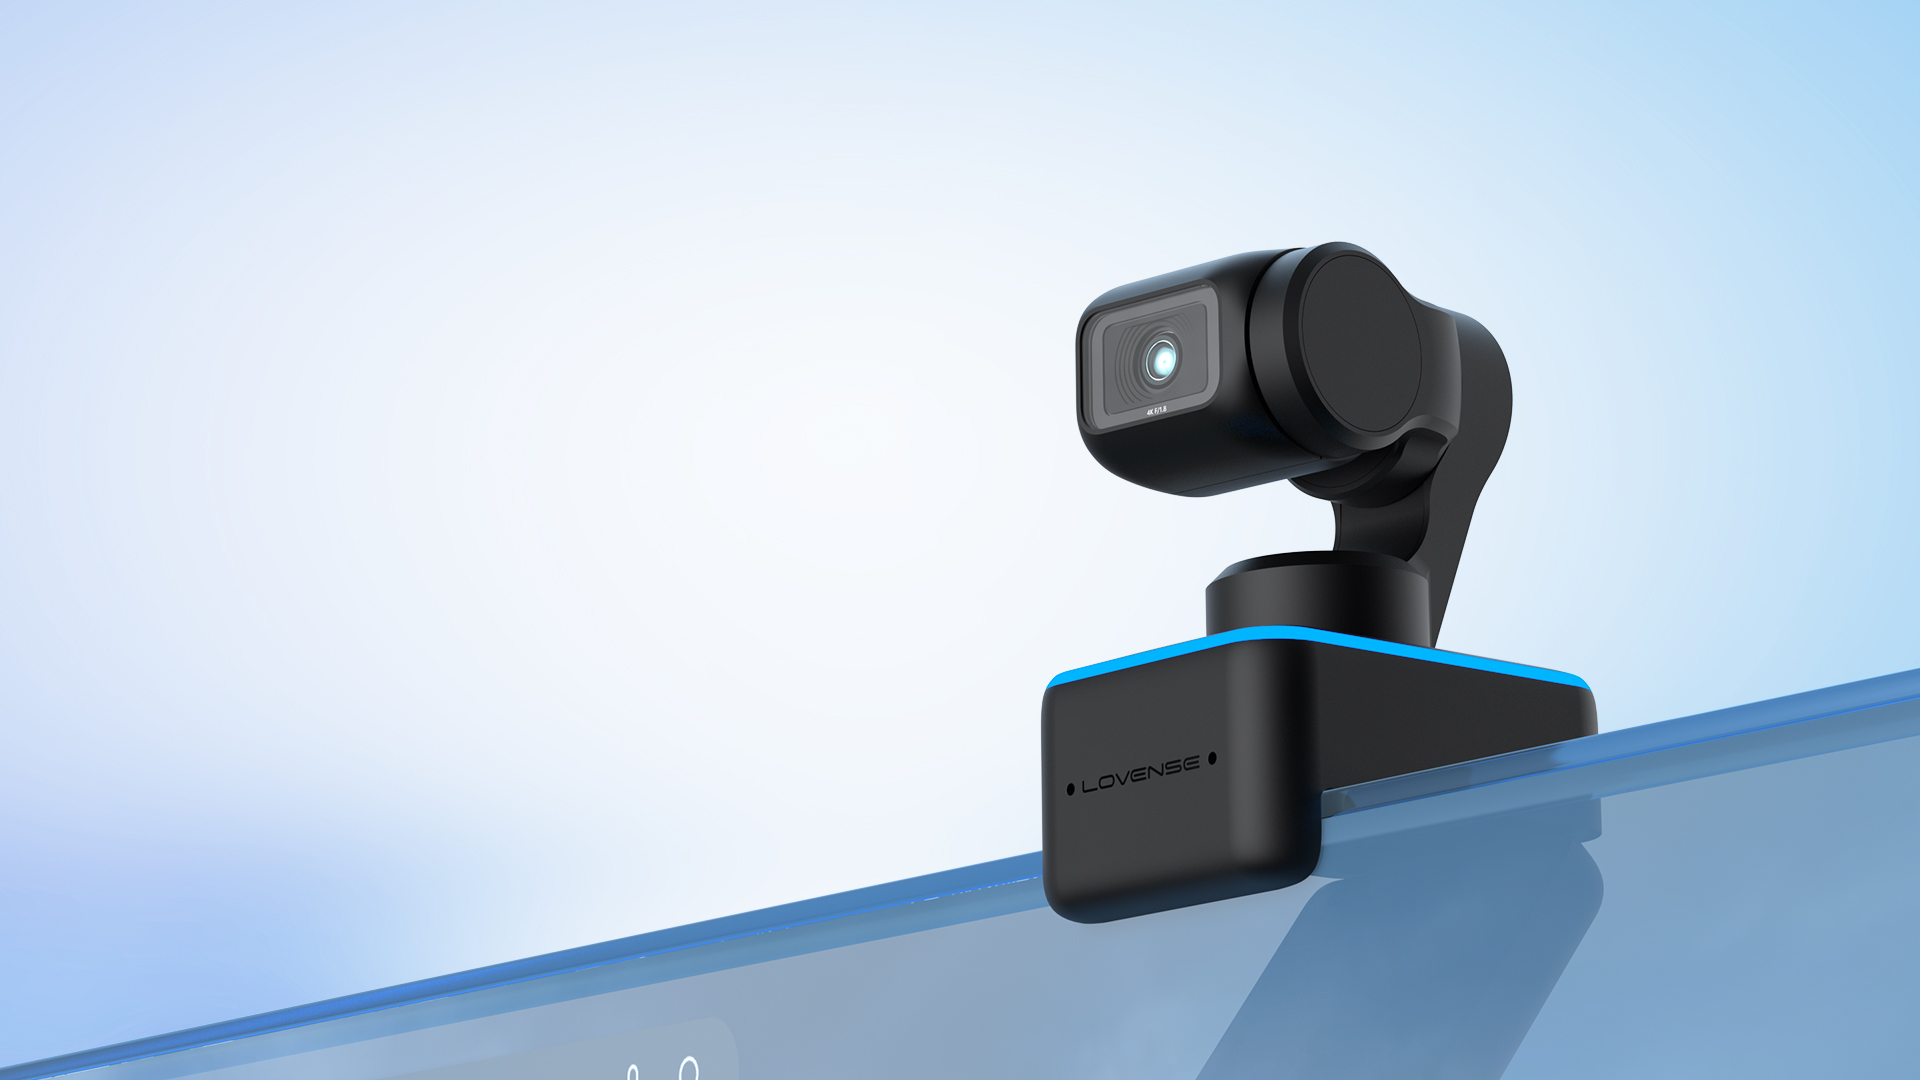 Lovense smart webcam for live streaming